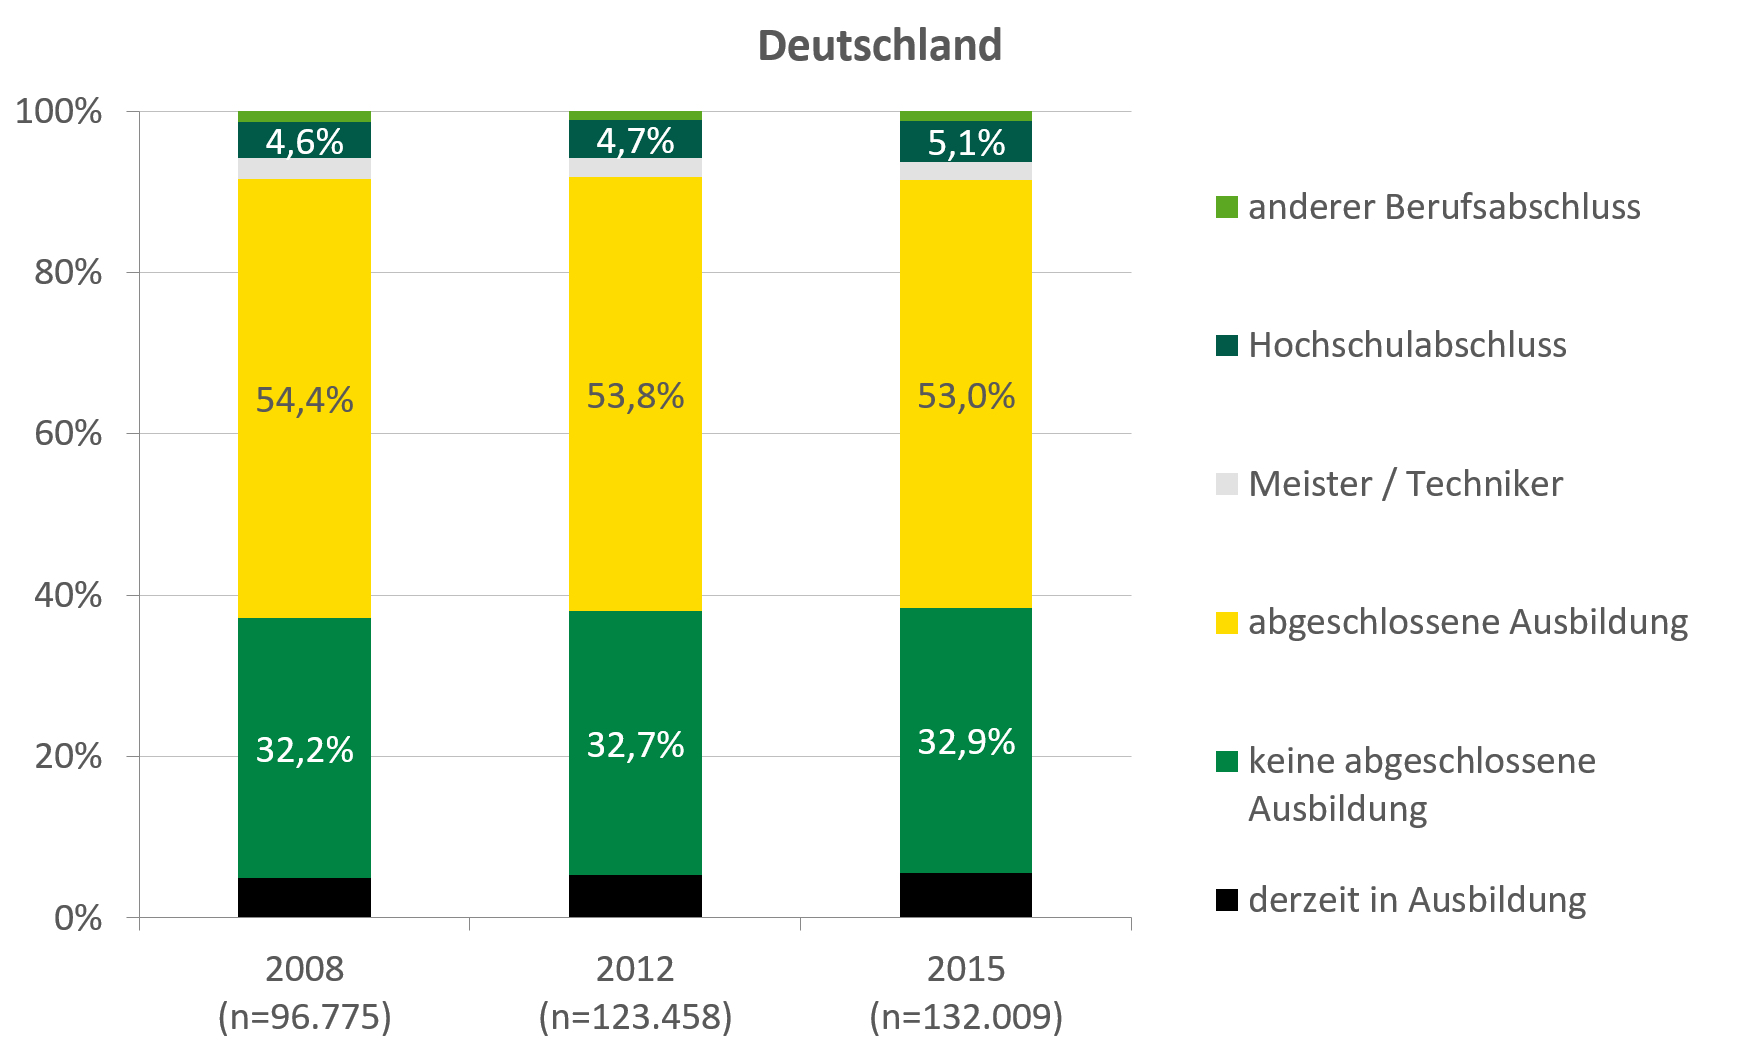 In Sachsen haben über 60 Prozent der Klientel eine abgeschlossene Ausbildung, 5,6 Prozent haben einen Hochschulabschluss. In Deutschland haben knapp 55 Prozent der Klientel eine abgeschlossene Ausbildung, 5,1 Prozent haben einen Hochschulabschluss.